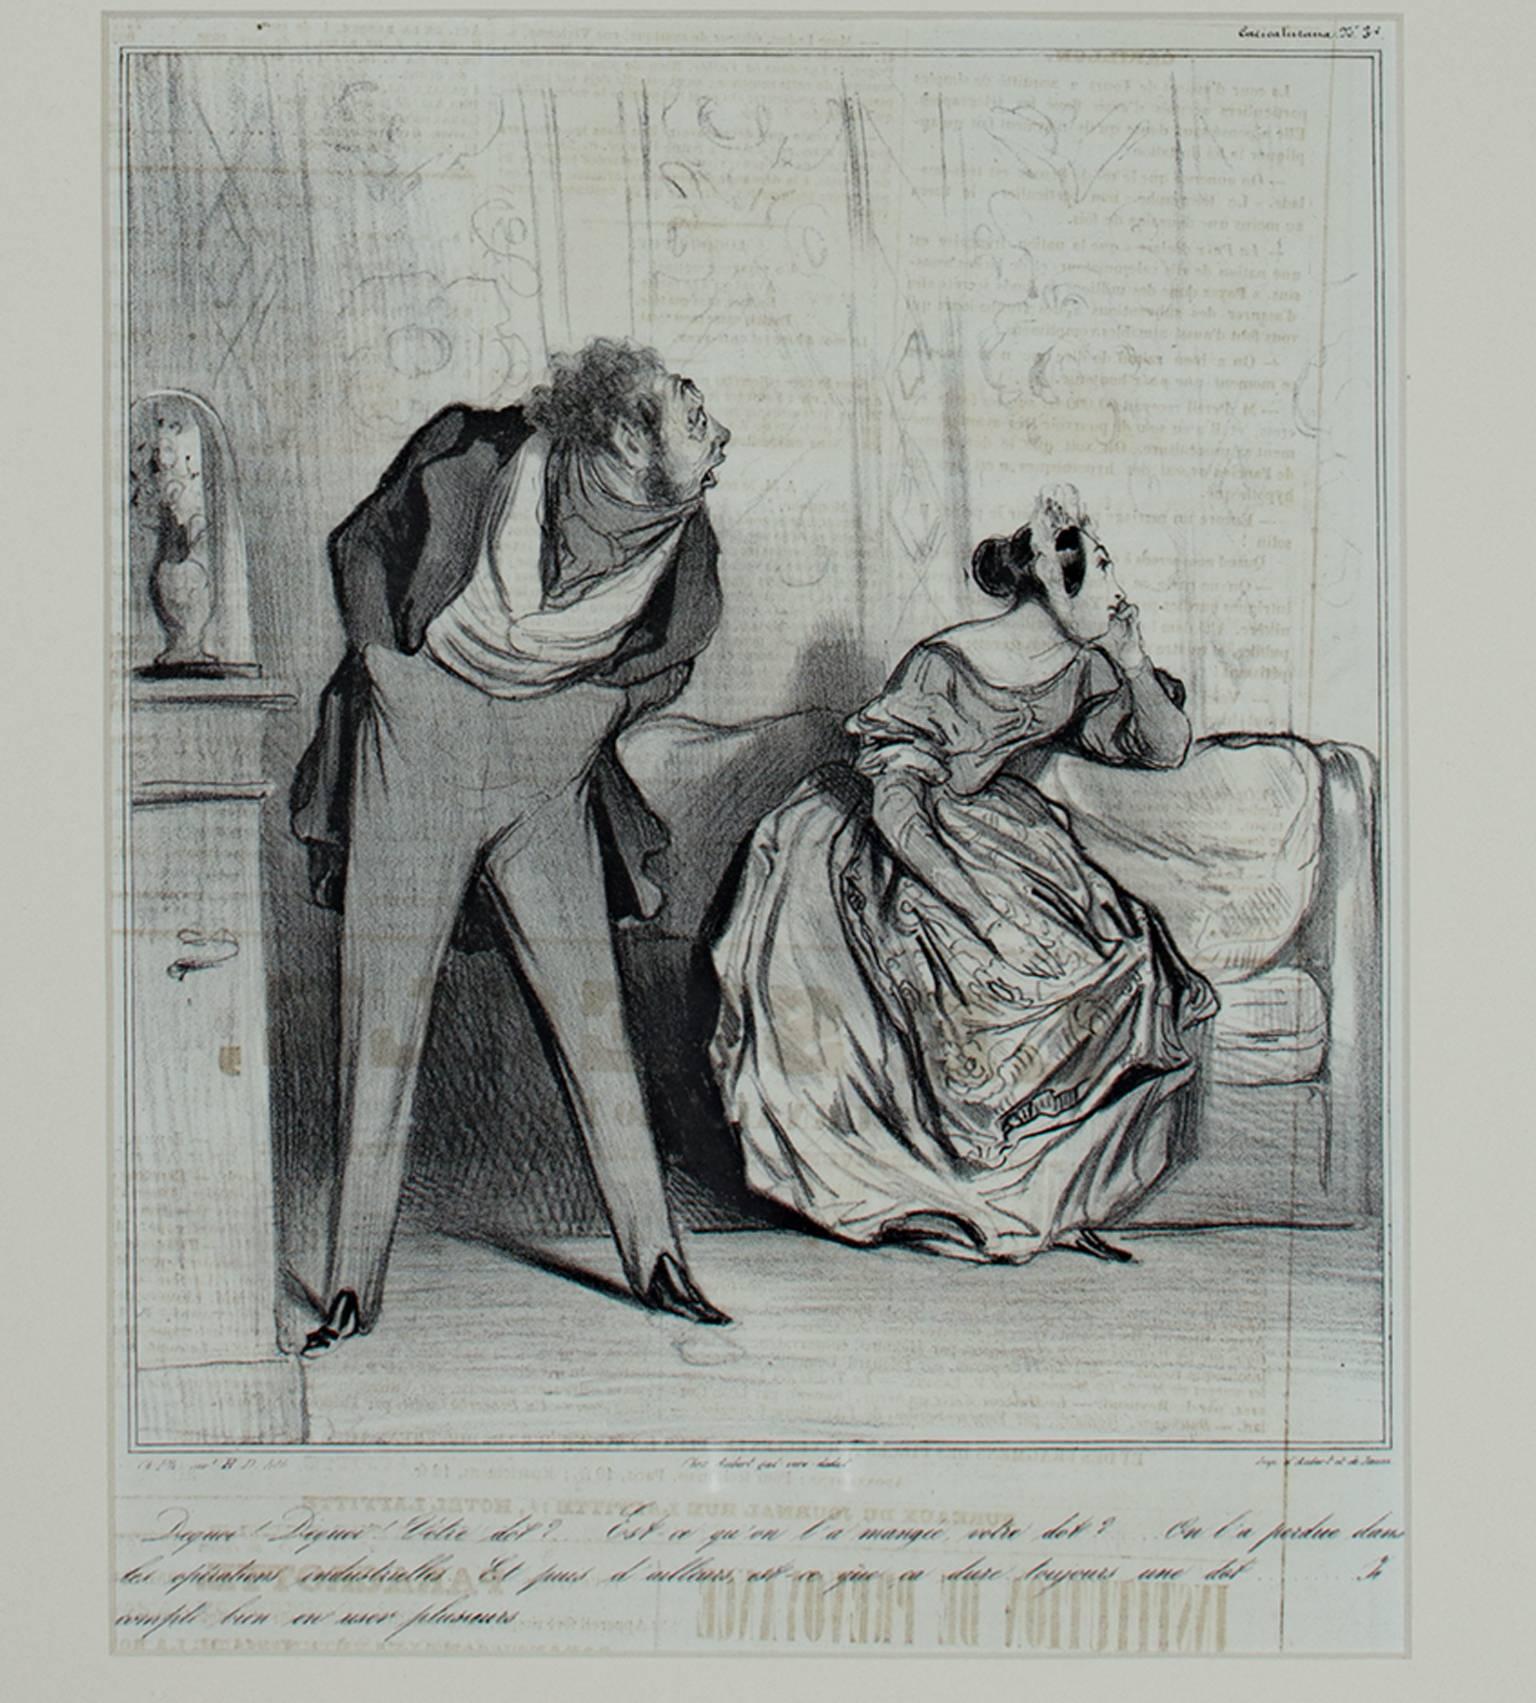 "De Quoi! De Quoi! Votre Dot?" ist eine Original-Lithographie 3/3 D. 390 (Charivari) von Honore Daumier. Es zeigt einen seltsam aussehenden Mann und eine schön gekleidete Frau im Gespräch. Unter dem Bild befindet sich ein Text, der die Szene